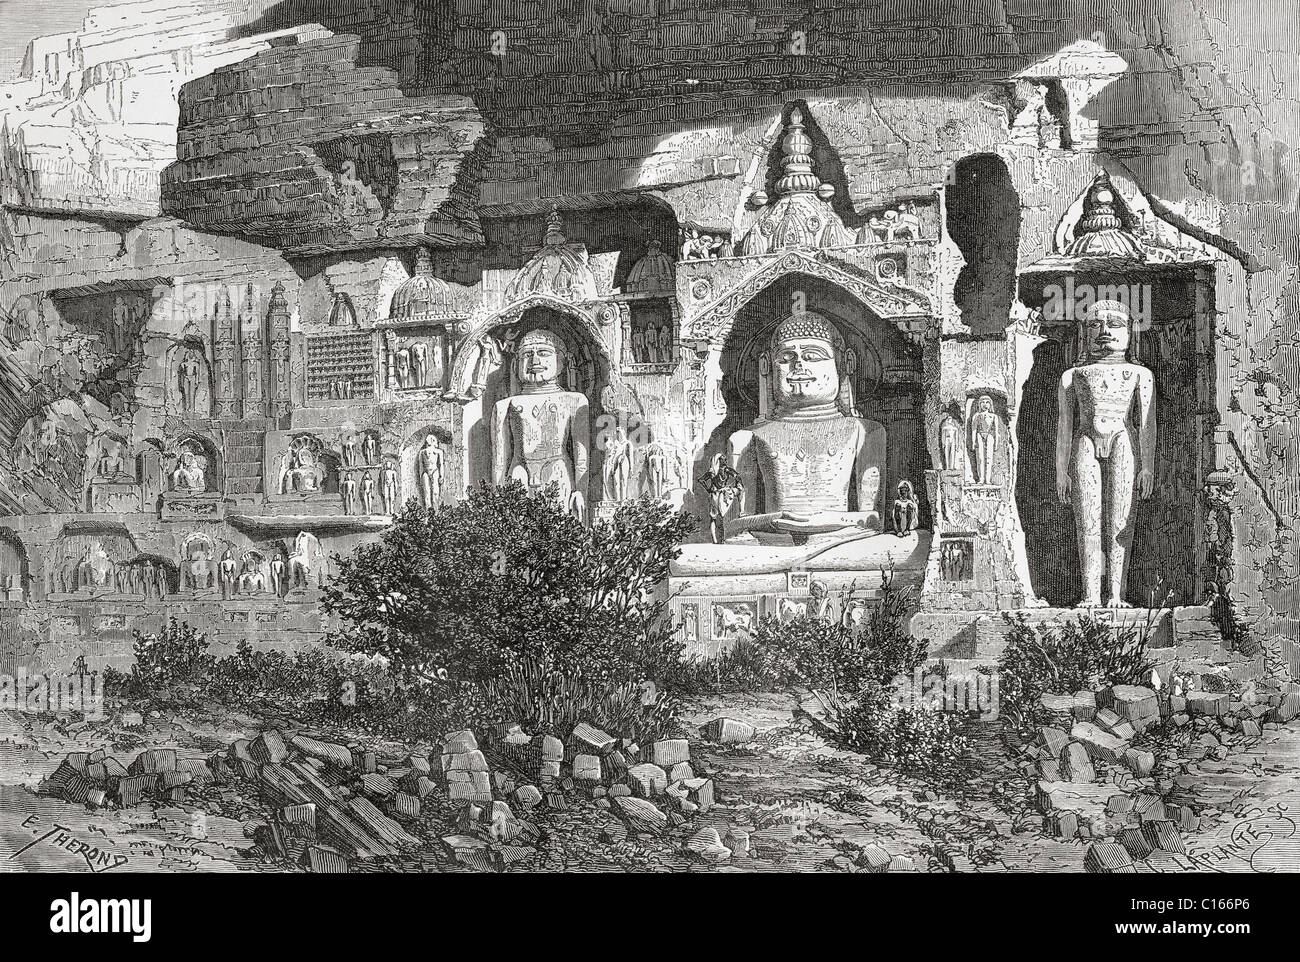 Jain-Skulpturen in Gwalior Fort, Madhya Pradesh, Indien im 19. Jahrhundert. Von El Mundo de la Mano, 1878 veröffentlicht. Stockfoto